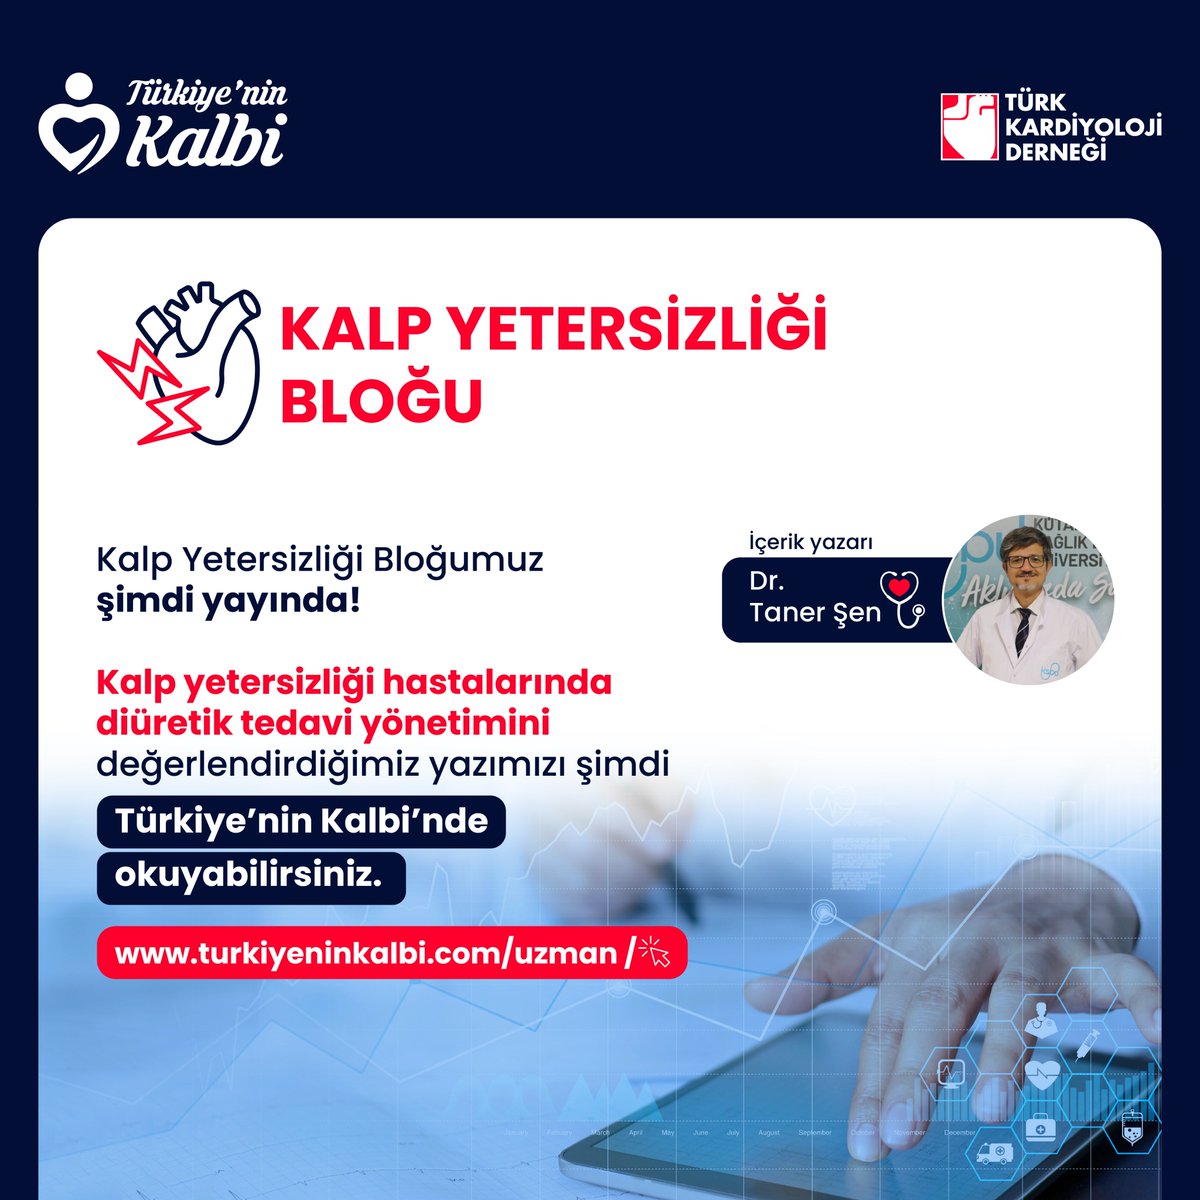 Yeni bloğumuz yayında! Kalp yetersizliği hastalarında diüretik tedavi yönetiminin nasıl olması gerektiğini detaylandırdığımız yazımıza hemen Türkiye’nin Kalbi web sitemizden, uzman girişiyle ulaşabilirsiniz. turkiyeninkalbi.com/uzman/blog/kal…